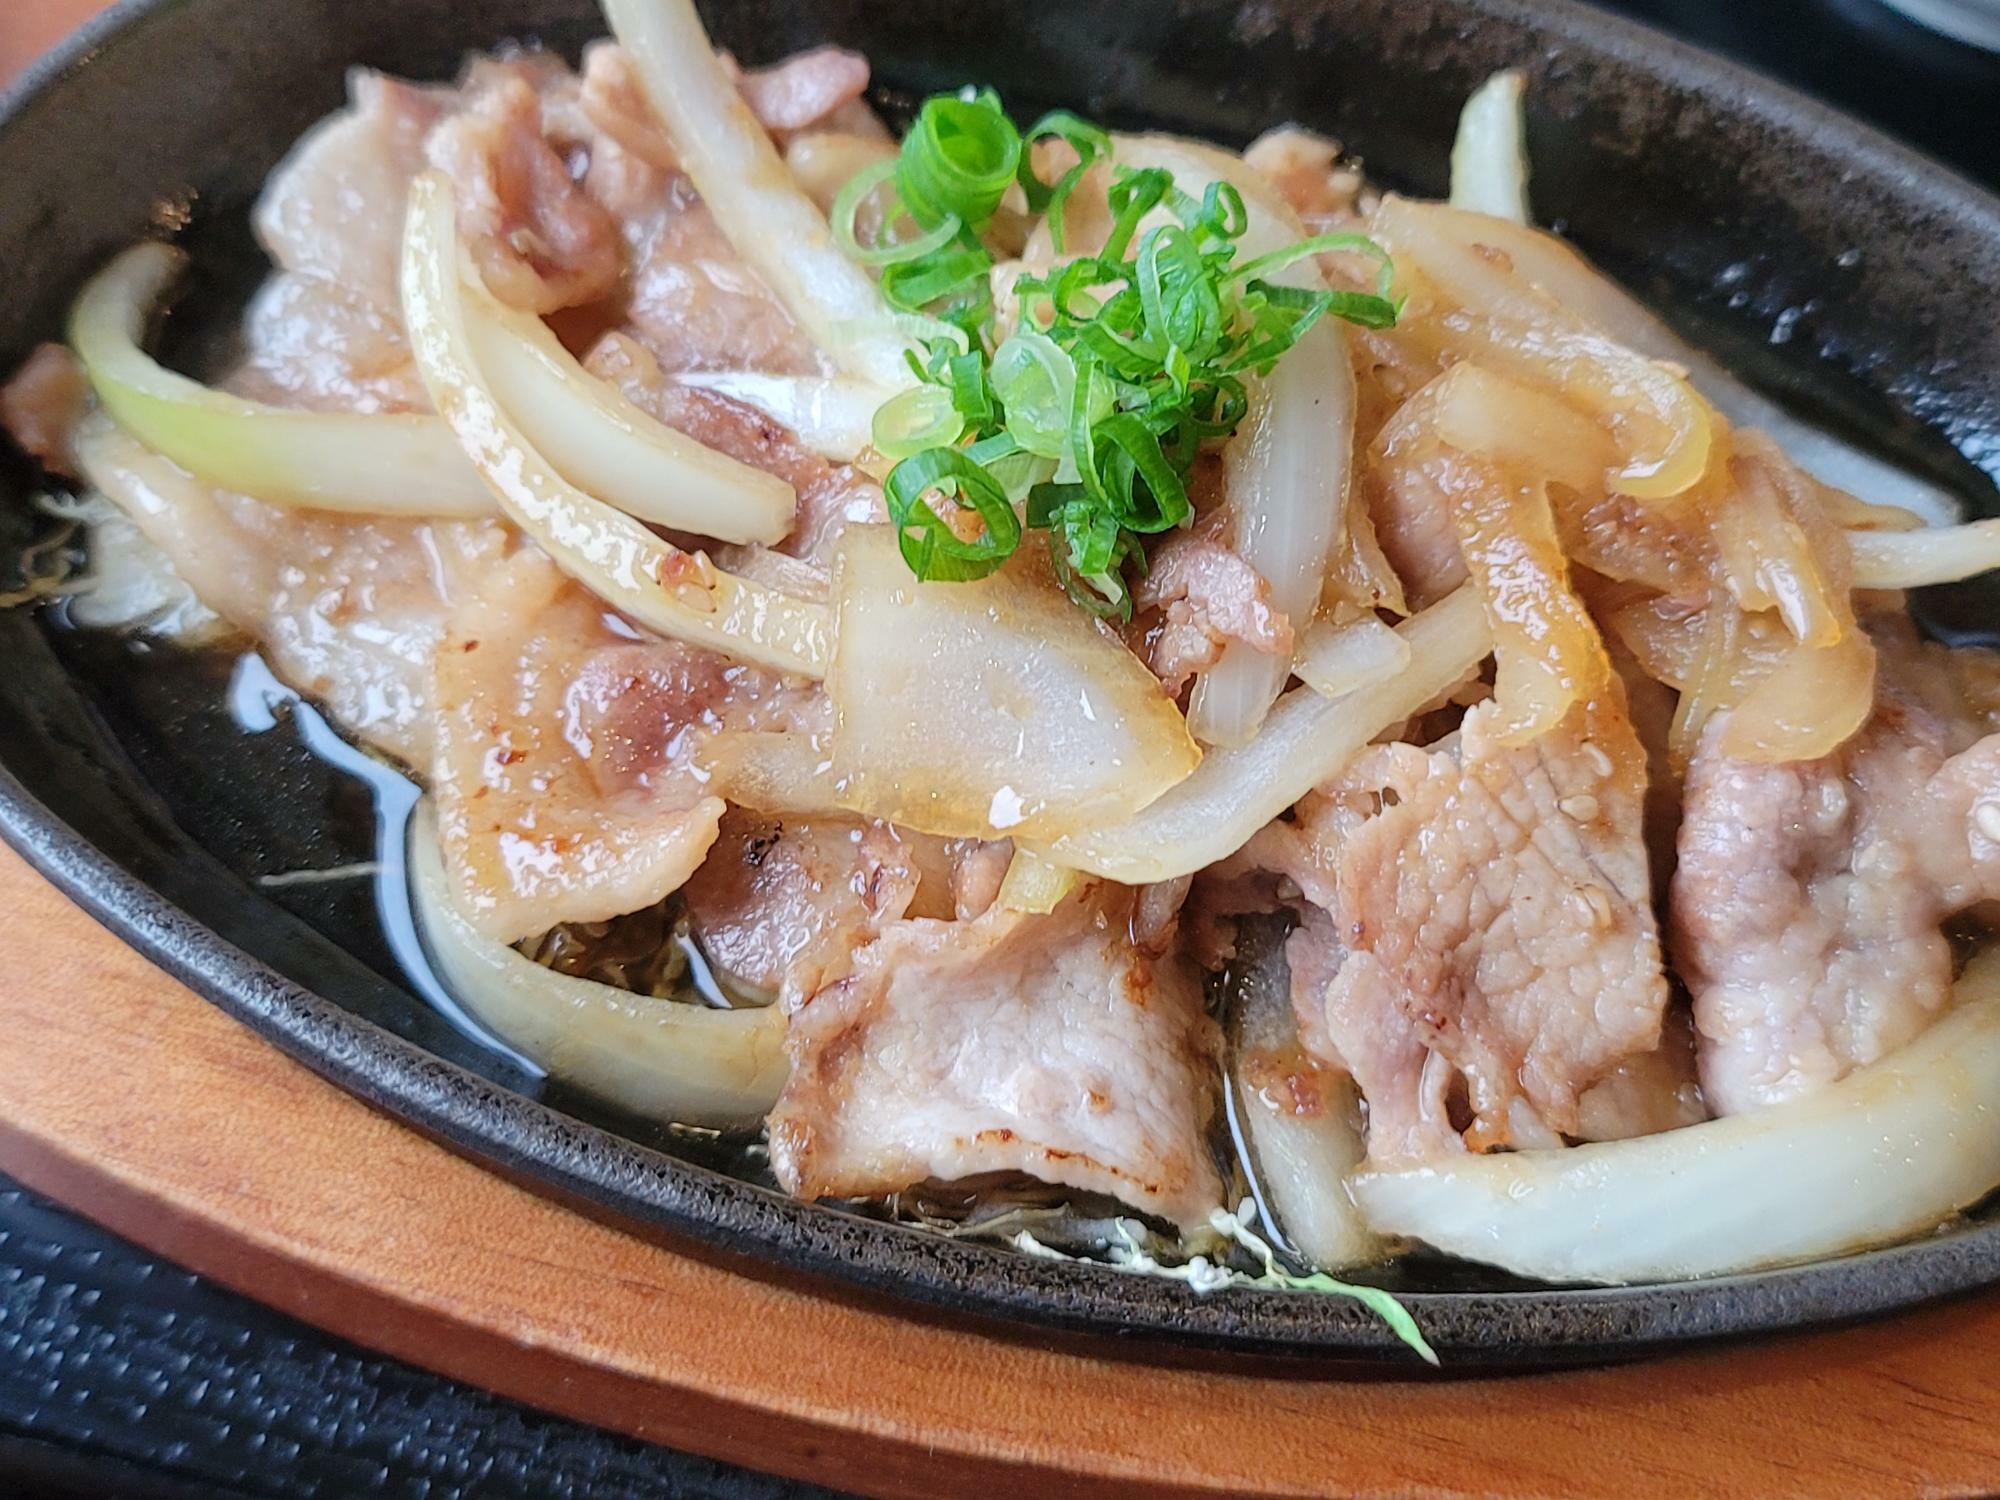 「メンズランチ」の豚の生姜焼き